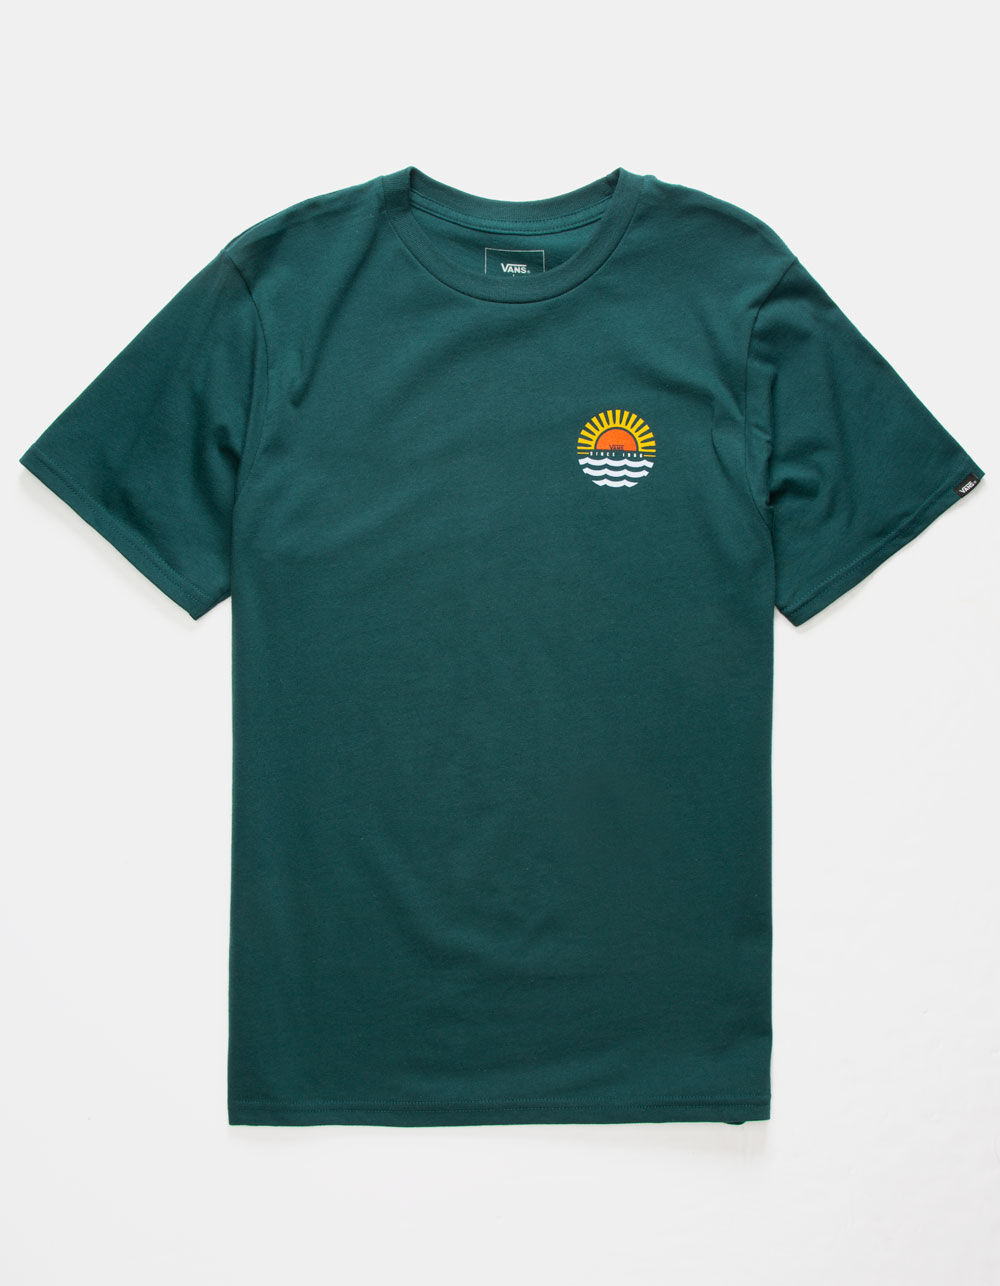 VANS Sunset Beach Boys T-Shirt - EMERALD | Tillys